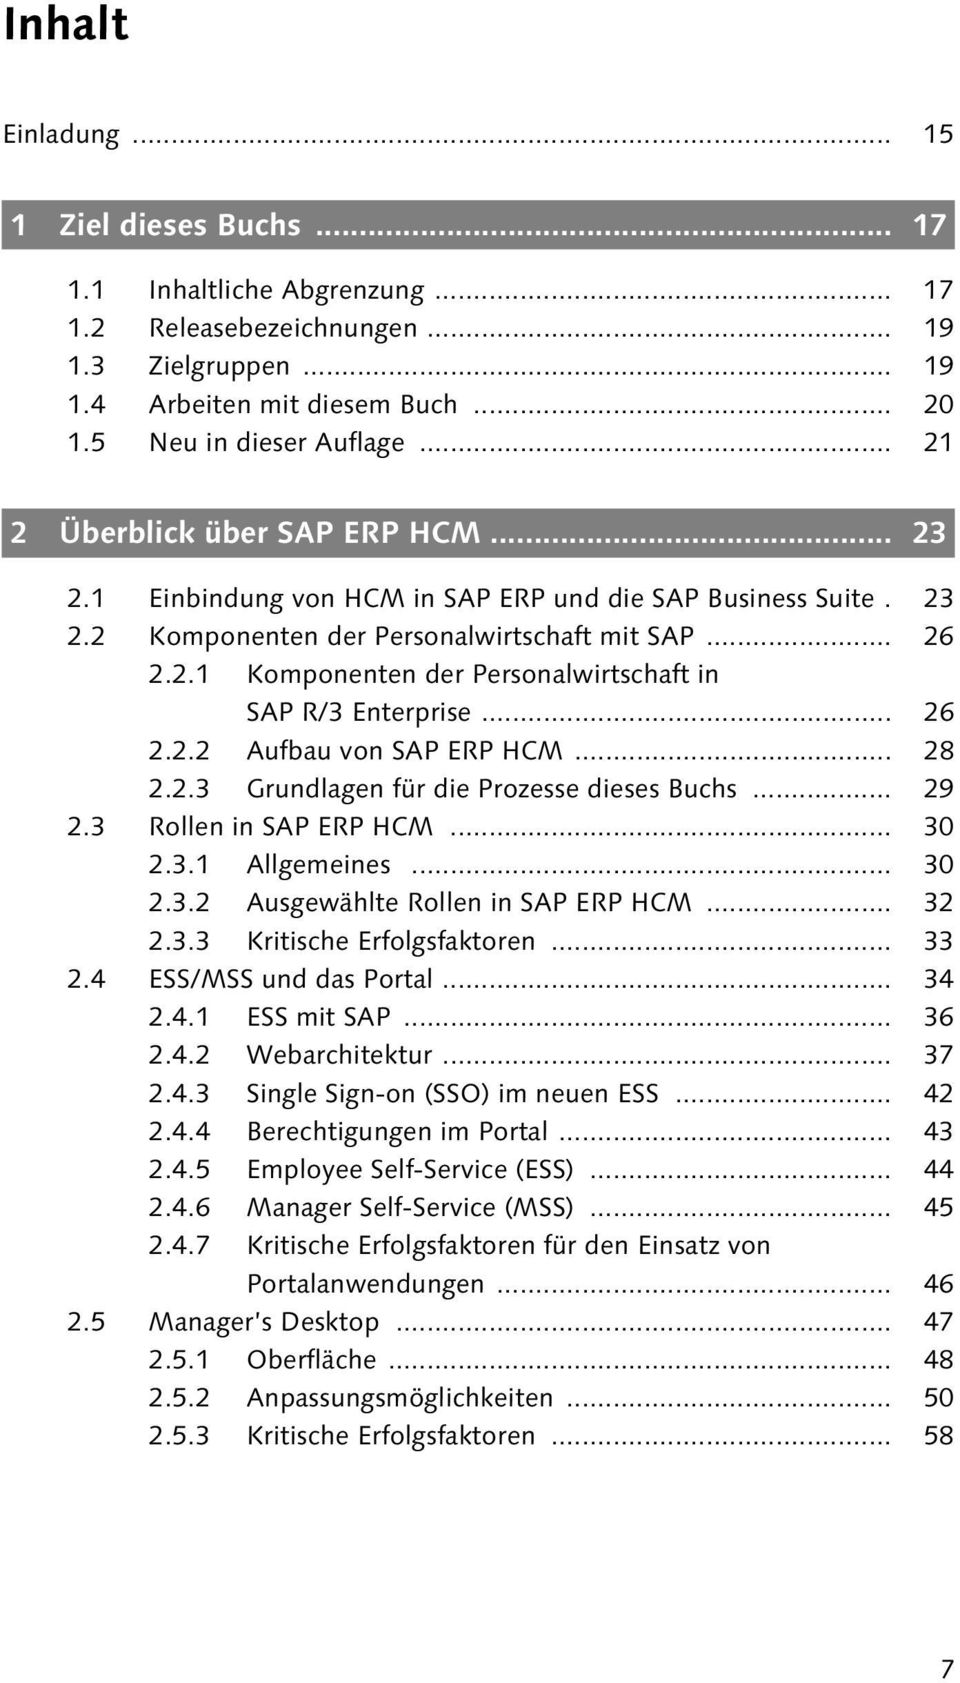 .. 26 2.2.2 Aufbau von SAP ERP HCM... 28 2.2.3 Grundlagen für die Prozesse dieses Buchs... 29 2.3 Rollen in SAP ERP HCM... 30 2.3.1 Allgemeines... 30 2.3.2 Ausgewählte Rollen in SAP ERP HCM... 32 2.3.3 Kritische Erfolgsfaktoren.